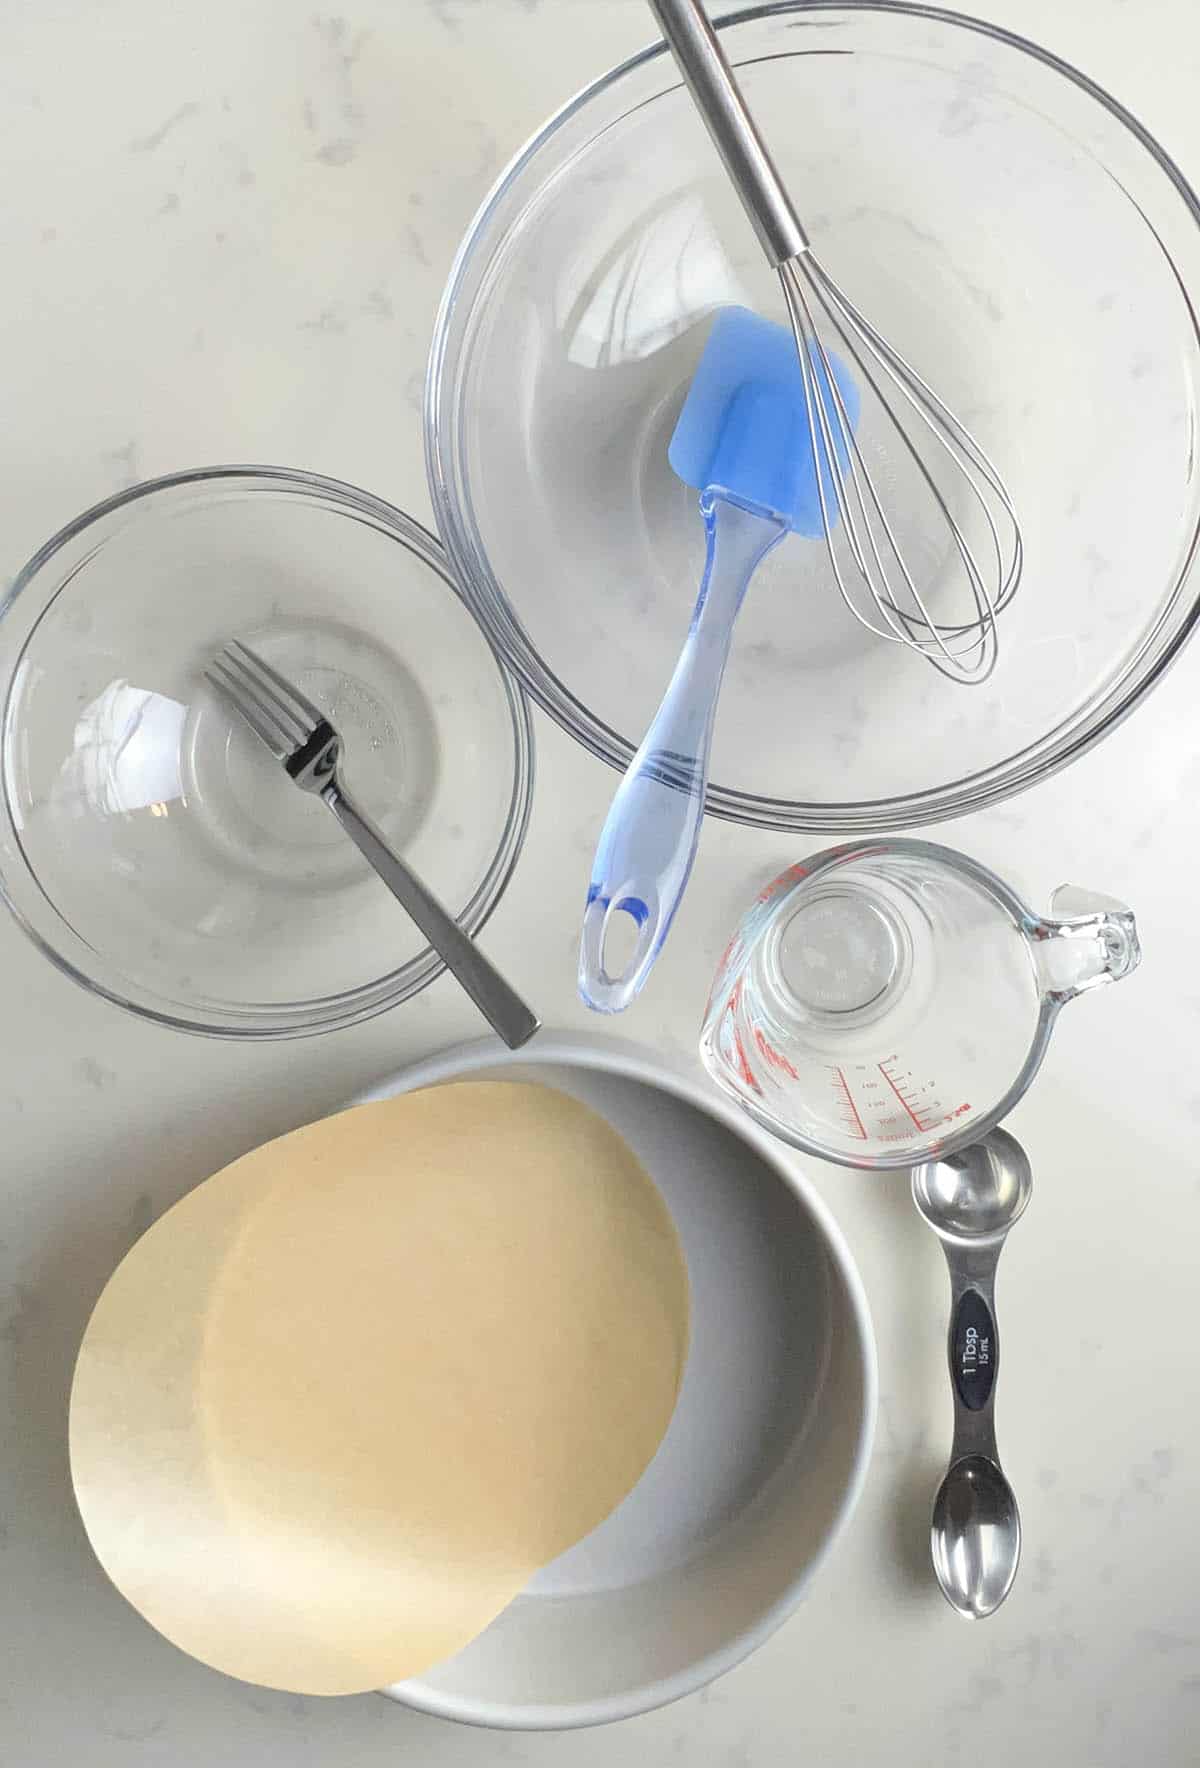 mixing bowls, cake pan, and utensils